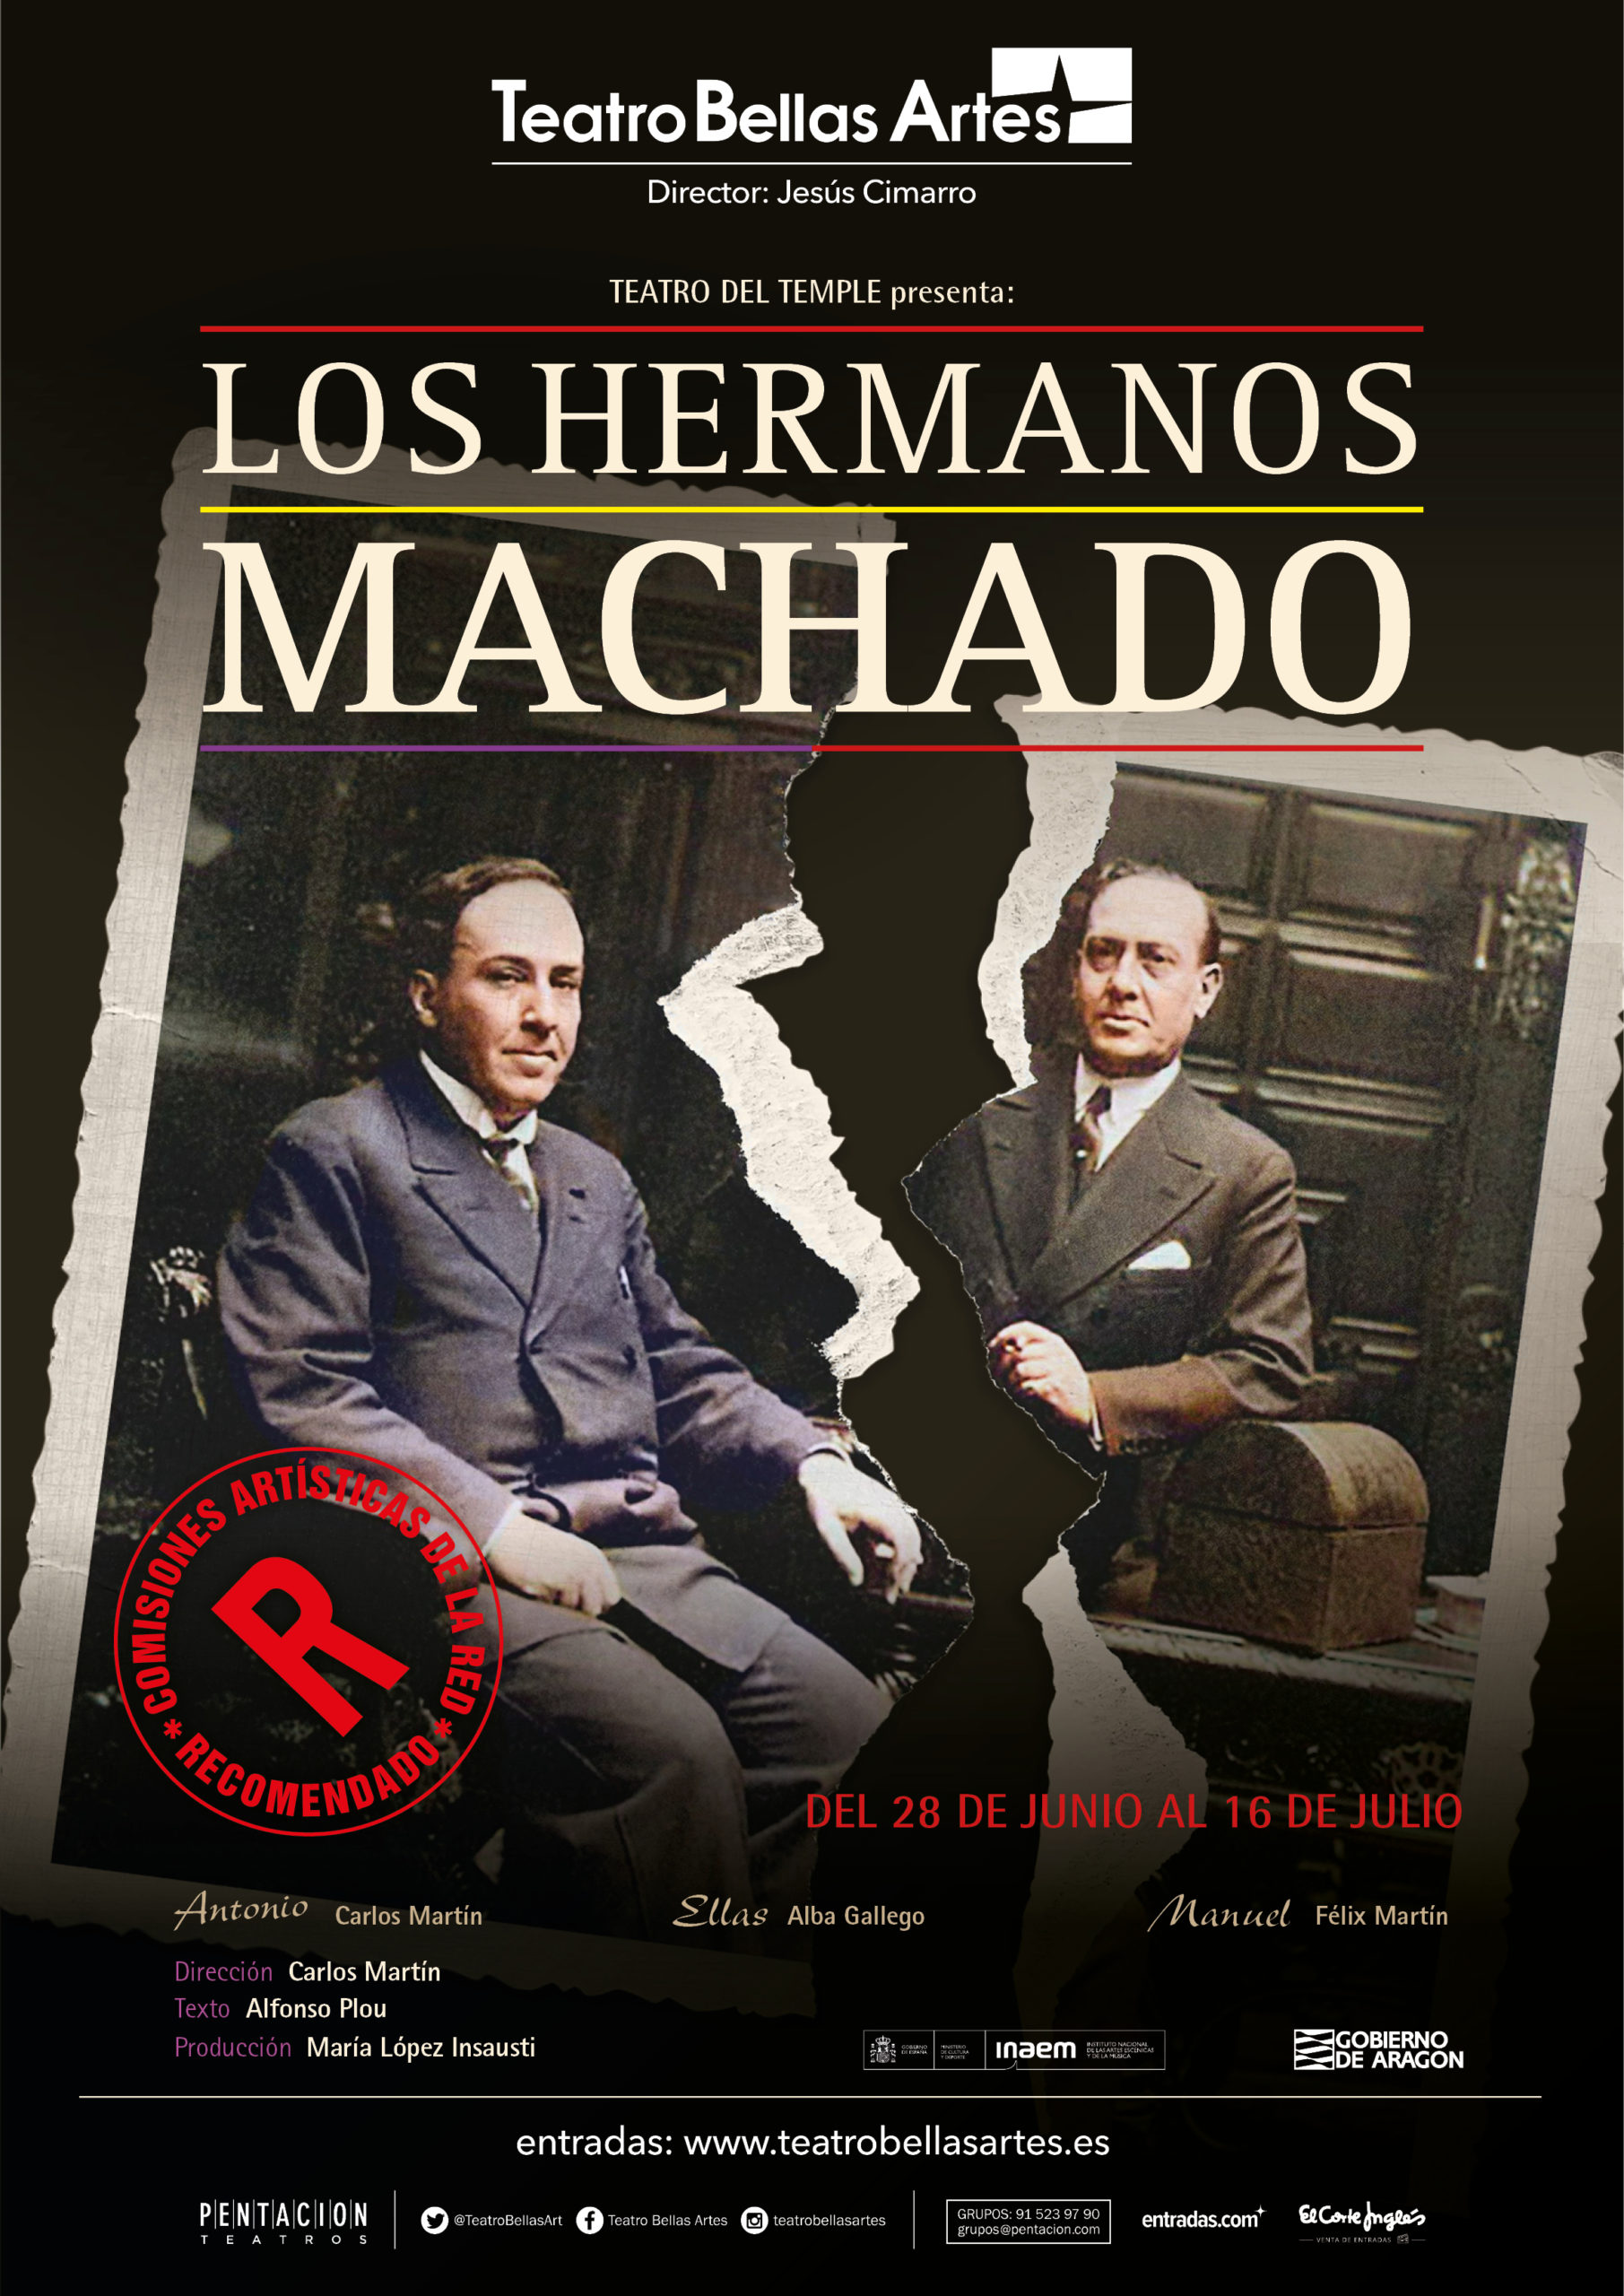 Los hermanos Machado - Teatro Bellas Artes - Teatro Bellas Artes